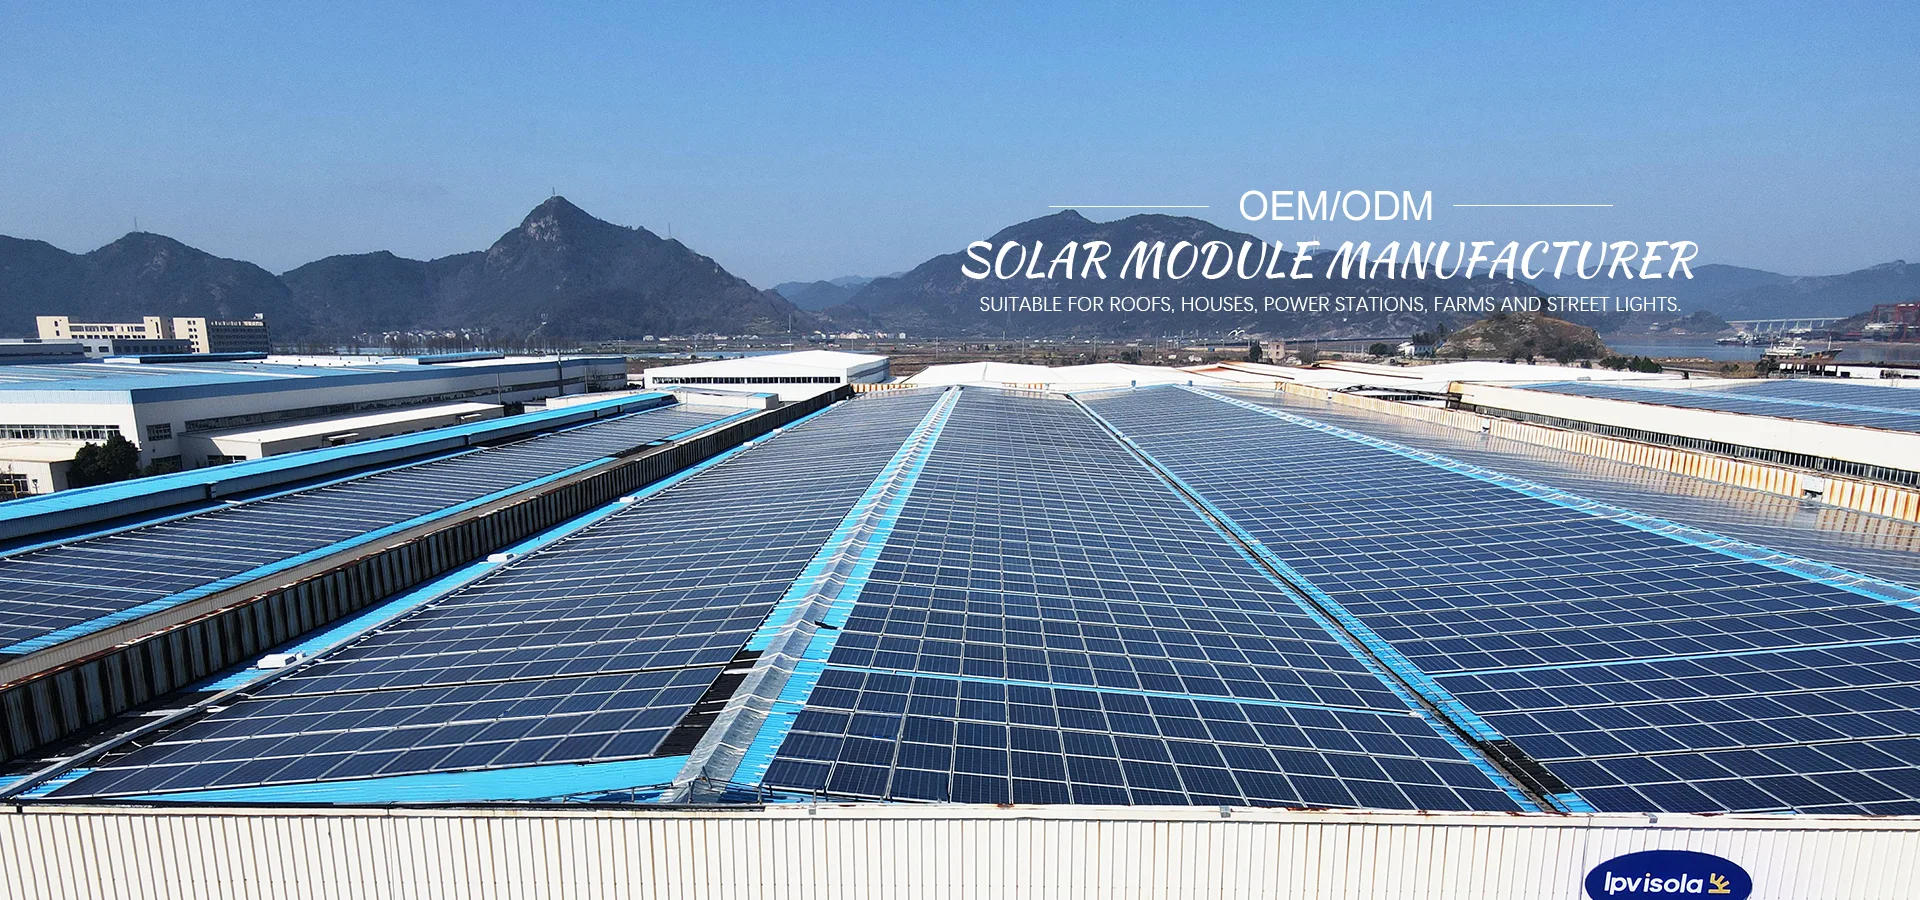 Fabricants et fournisseurs de modules solaires en Chine